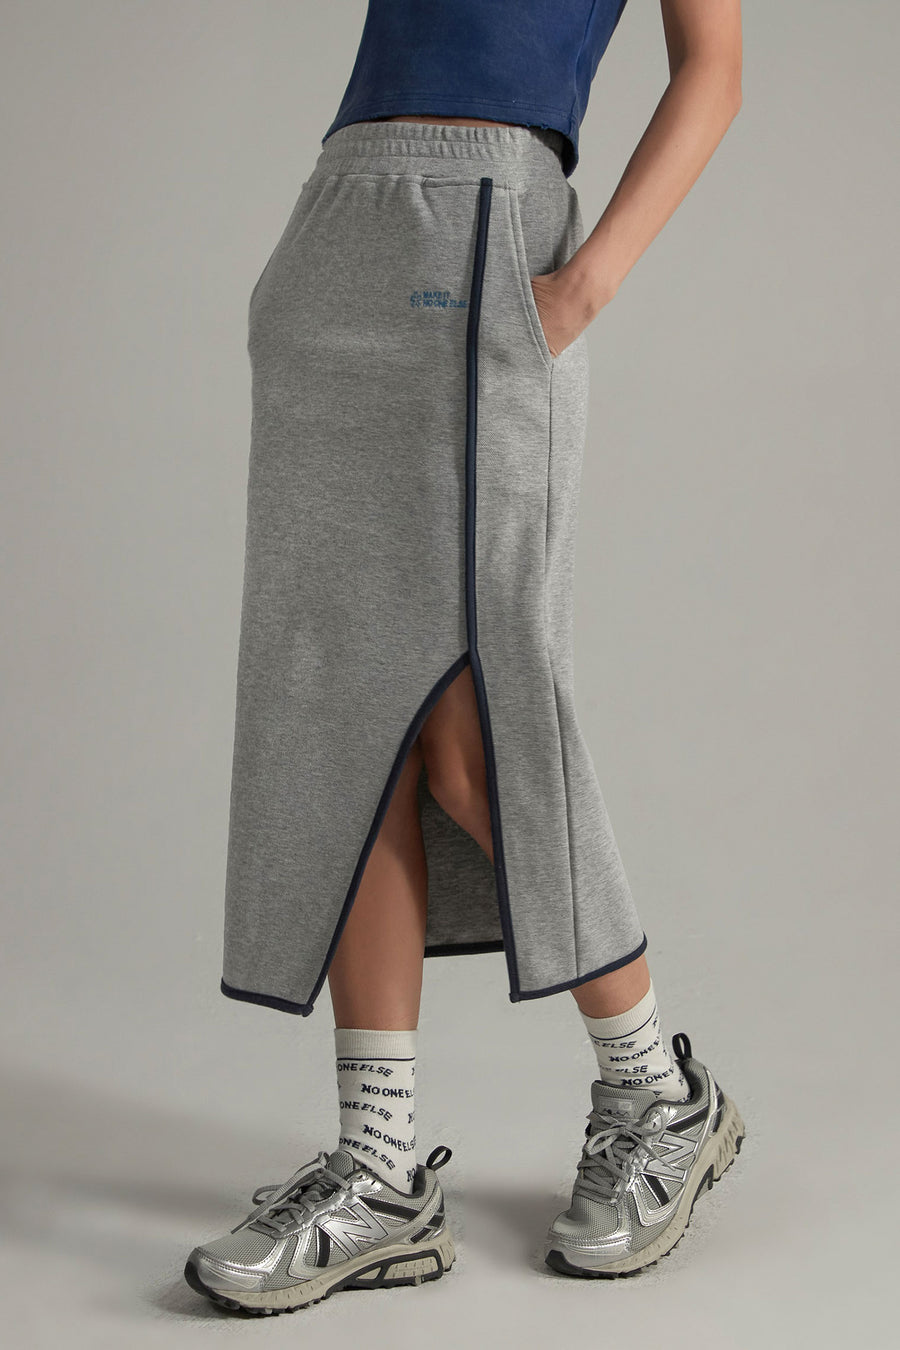 CHUU Side Slit Long Sport Skirt